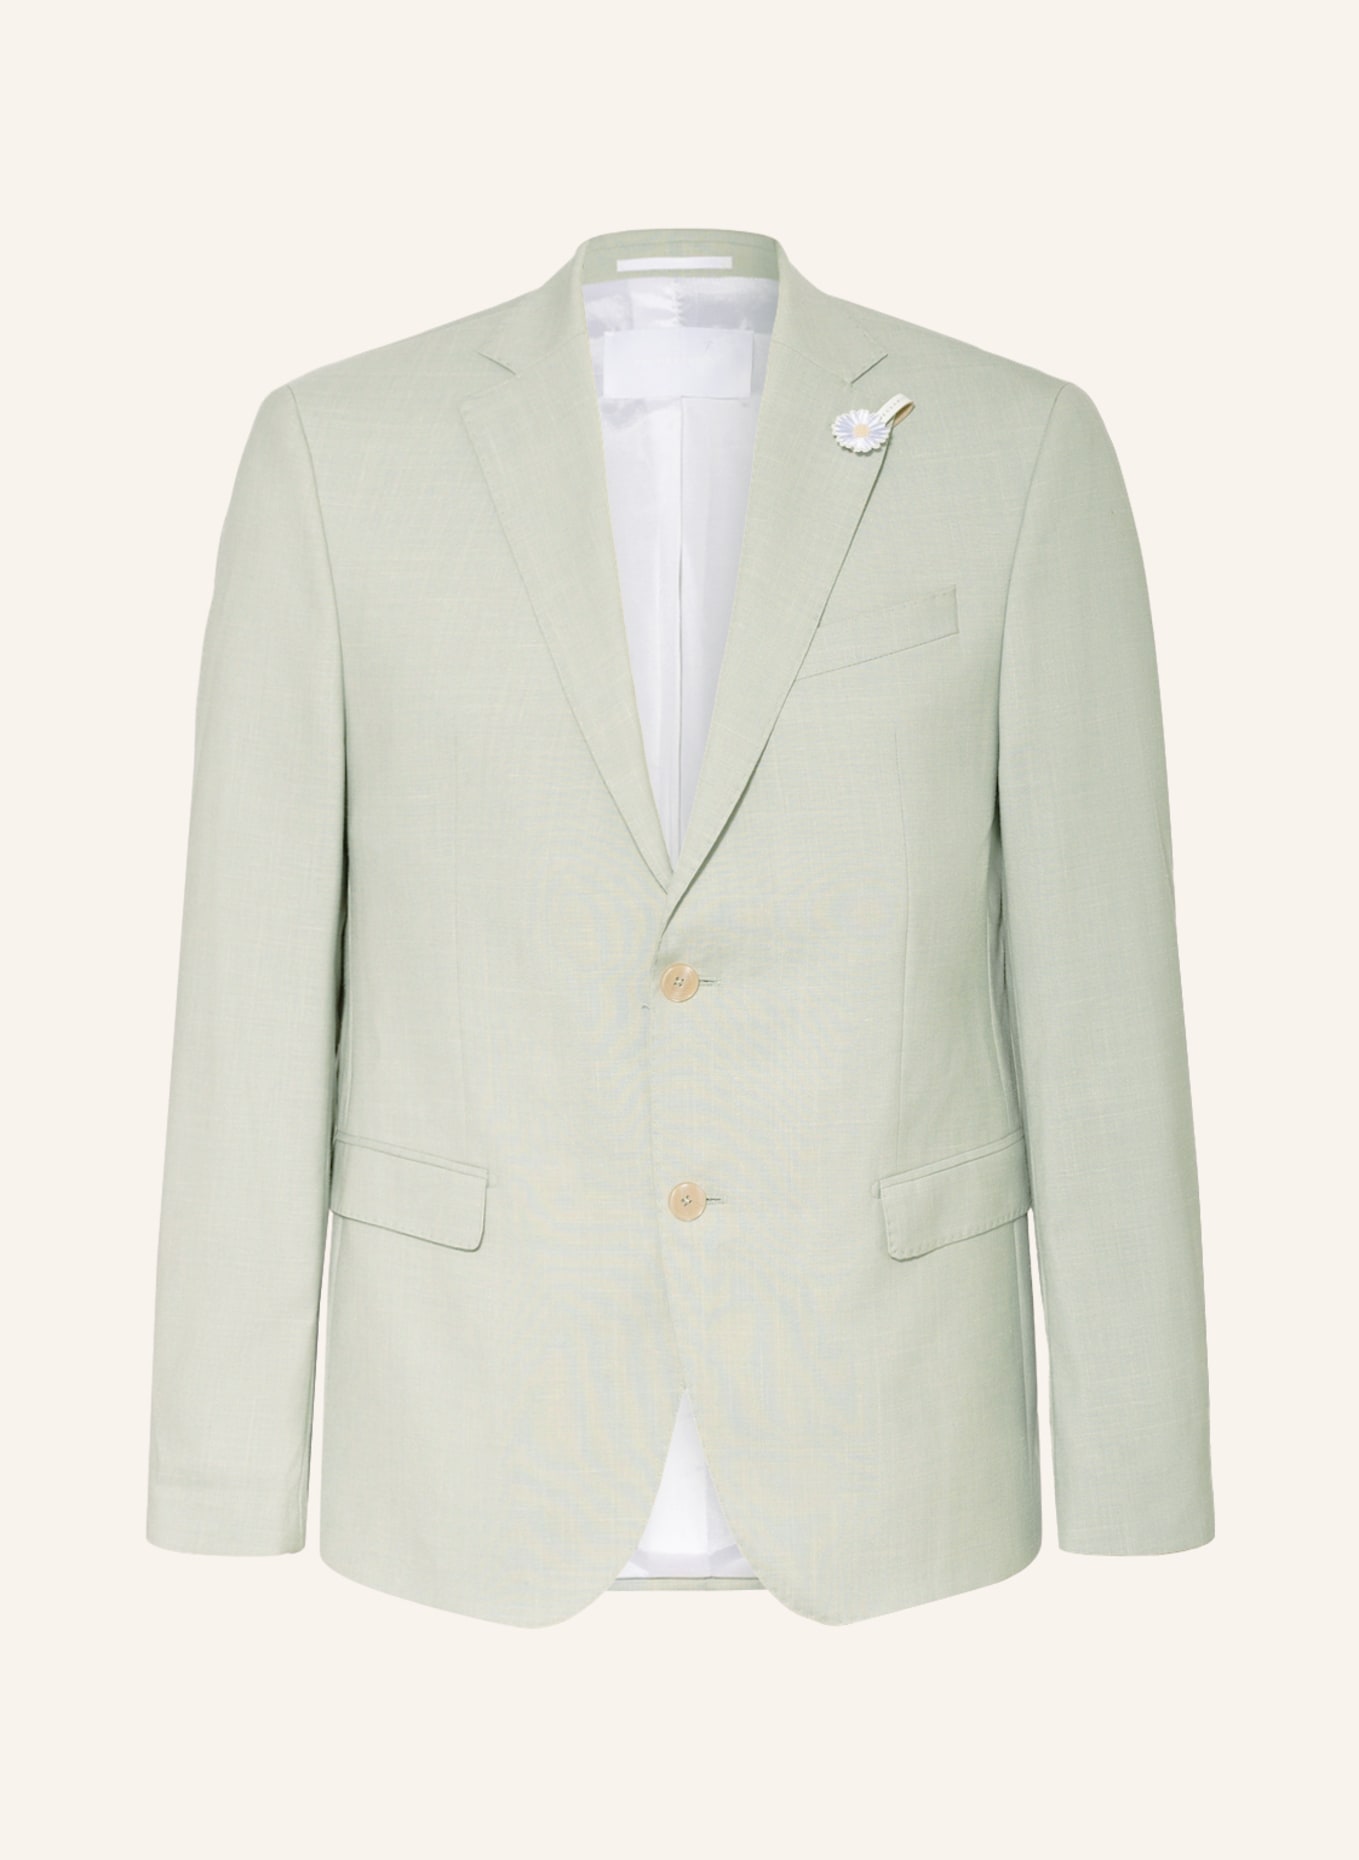 BALDESSARINI Suit jacket regular fit, Color: 5110 Green Bay (Image 1)